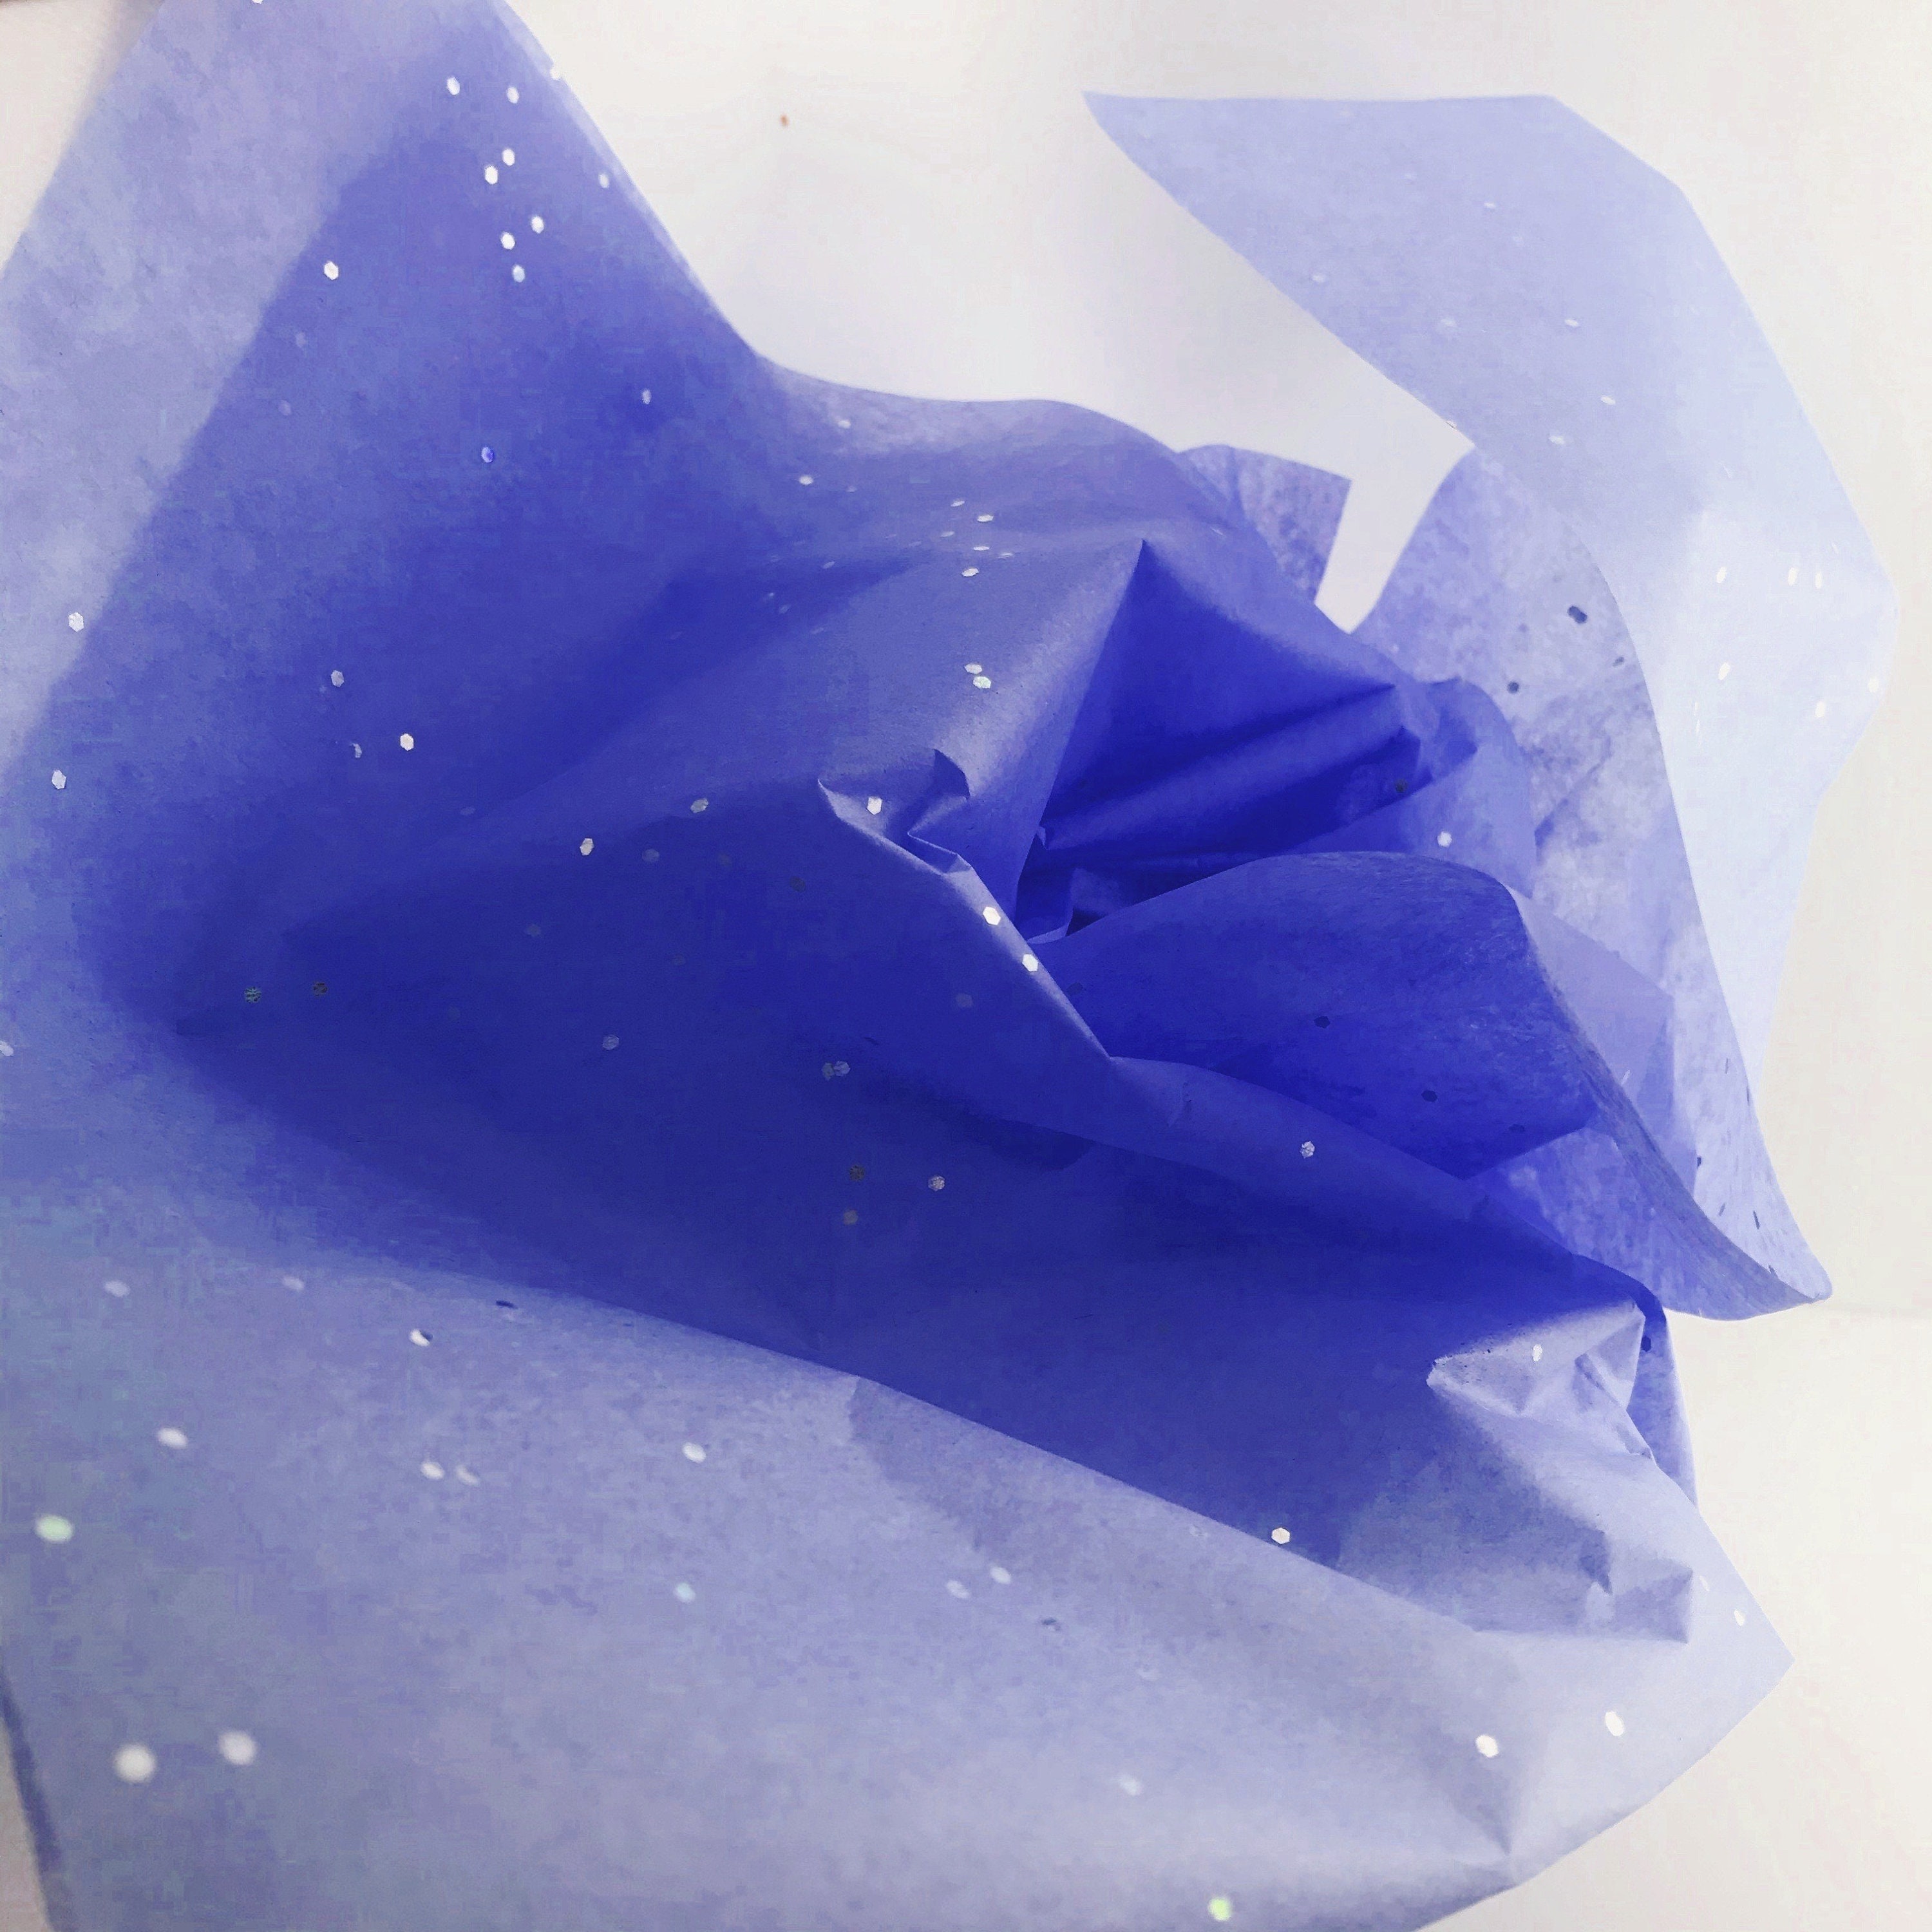  InsideMyNest Sparkly Glitter Gemstones Tissue Paper